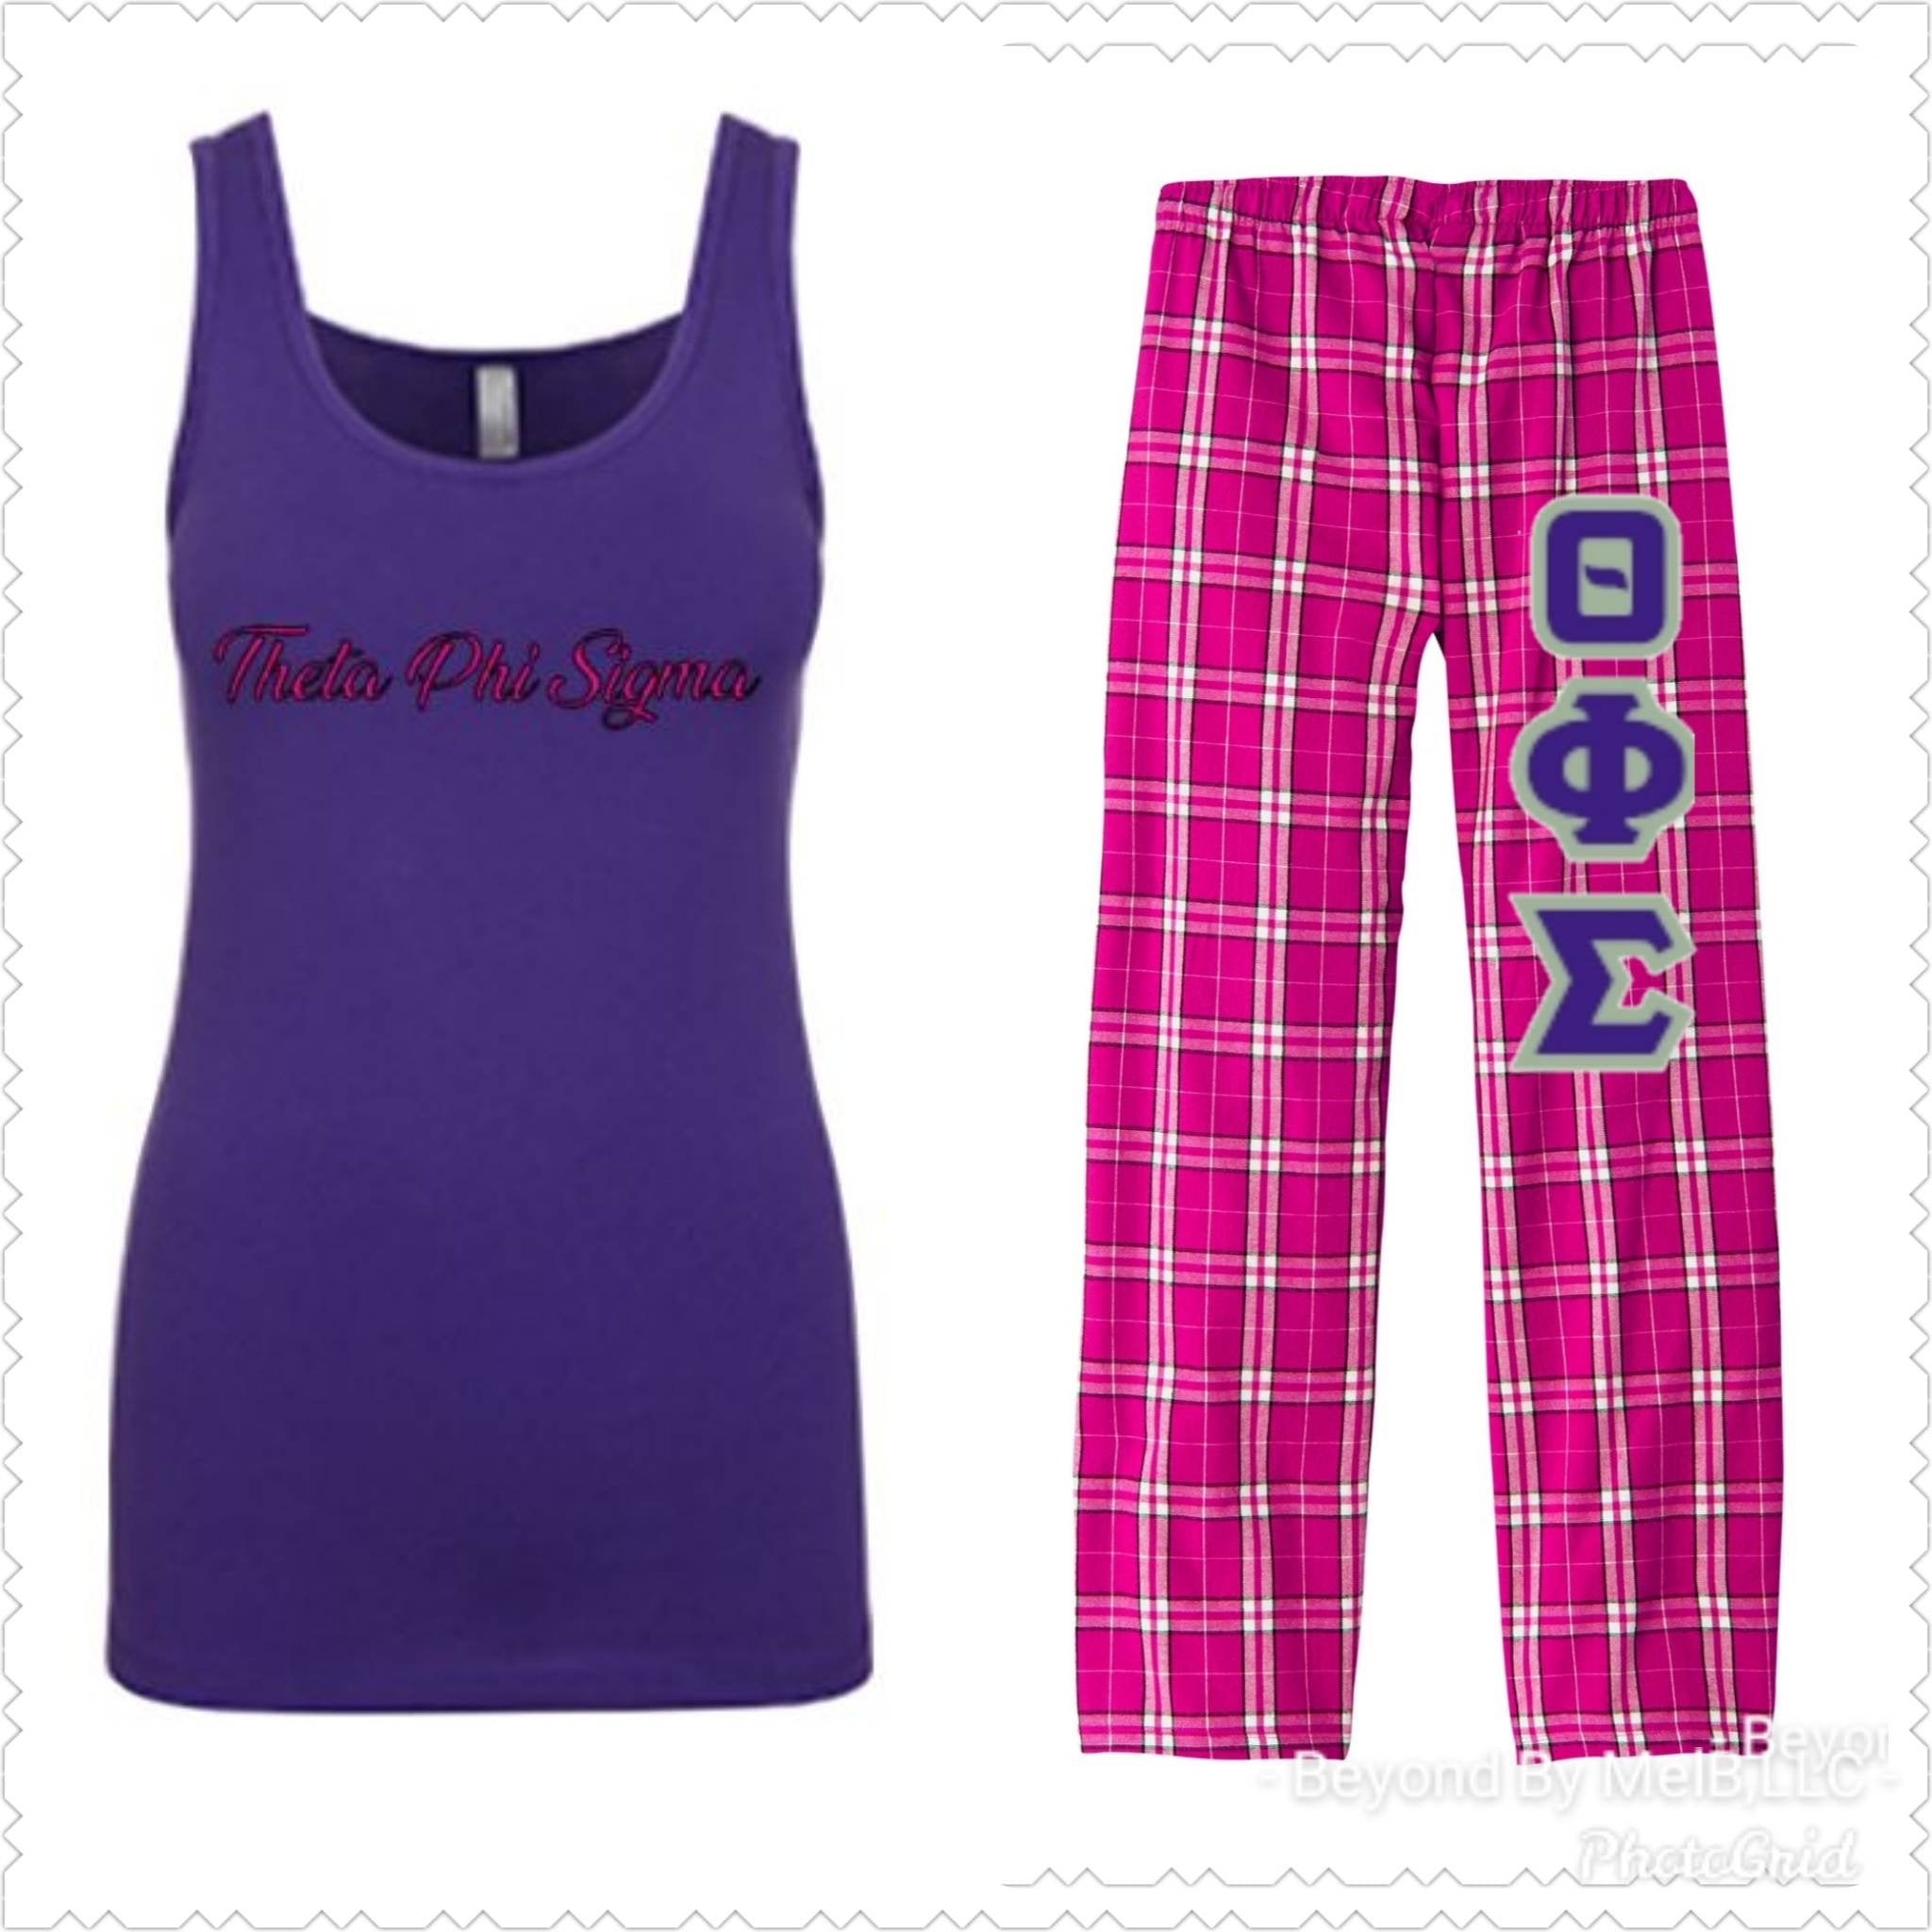 Theta Phi Sigma pajama set.